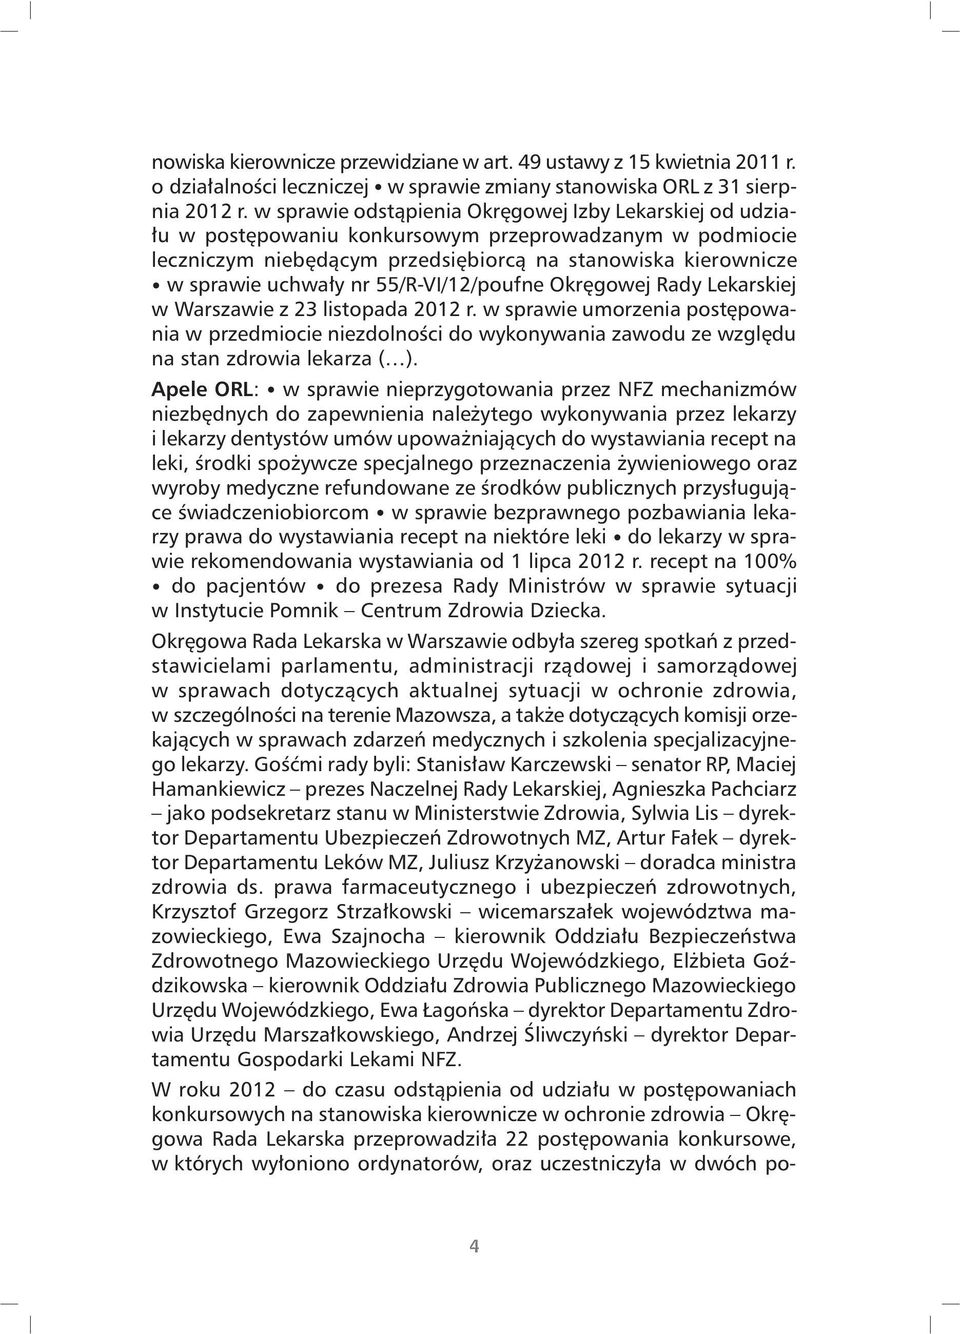 nr 55/R-VI/12/poufne Okrêgowej Rady Lekarskiej w Warszawie z 23 listopada 2012 r.